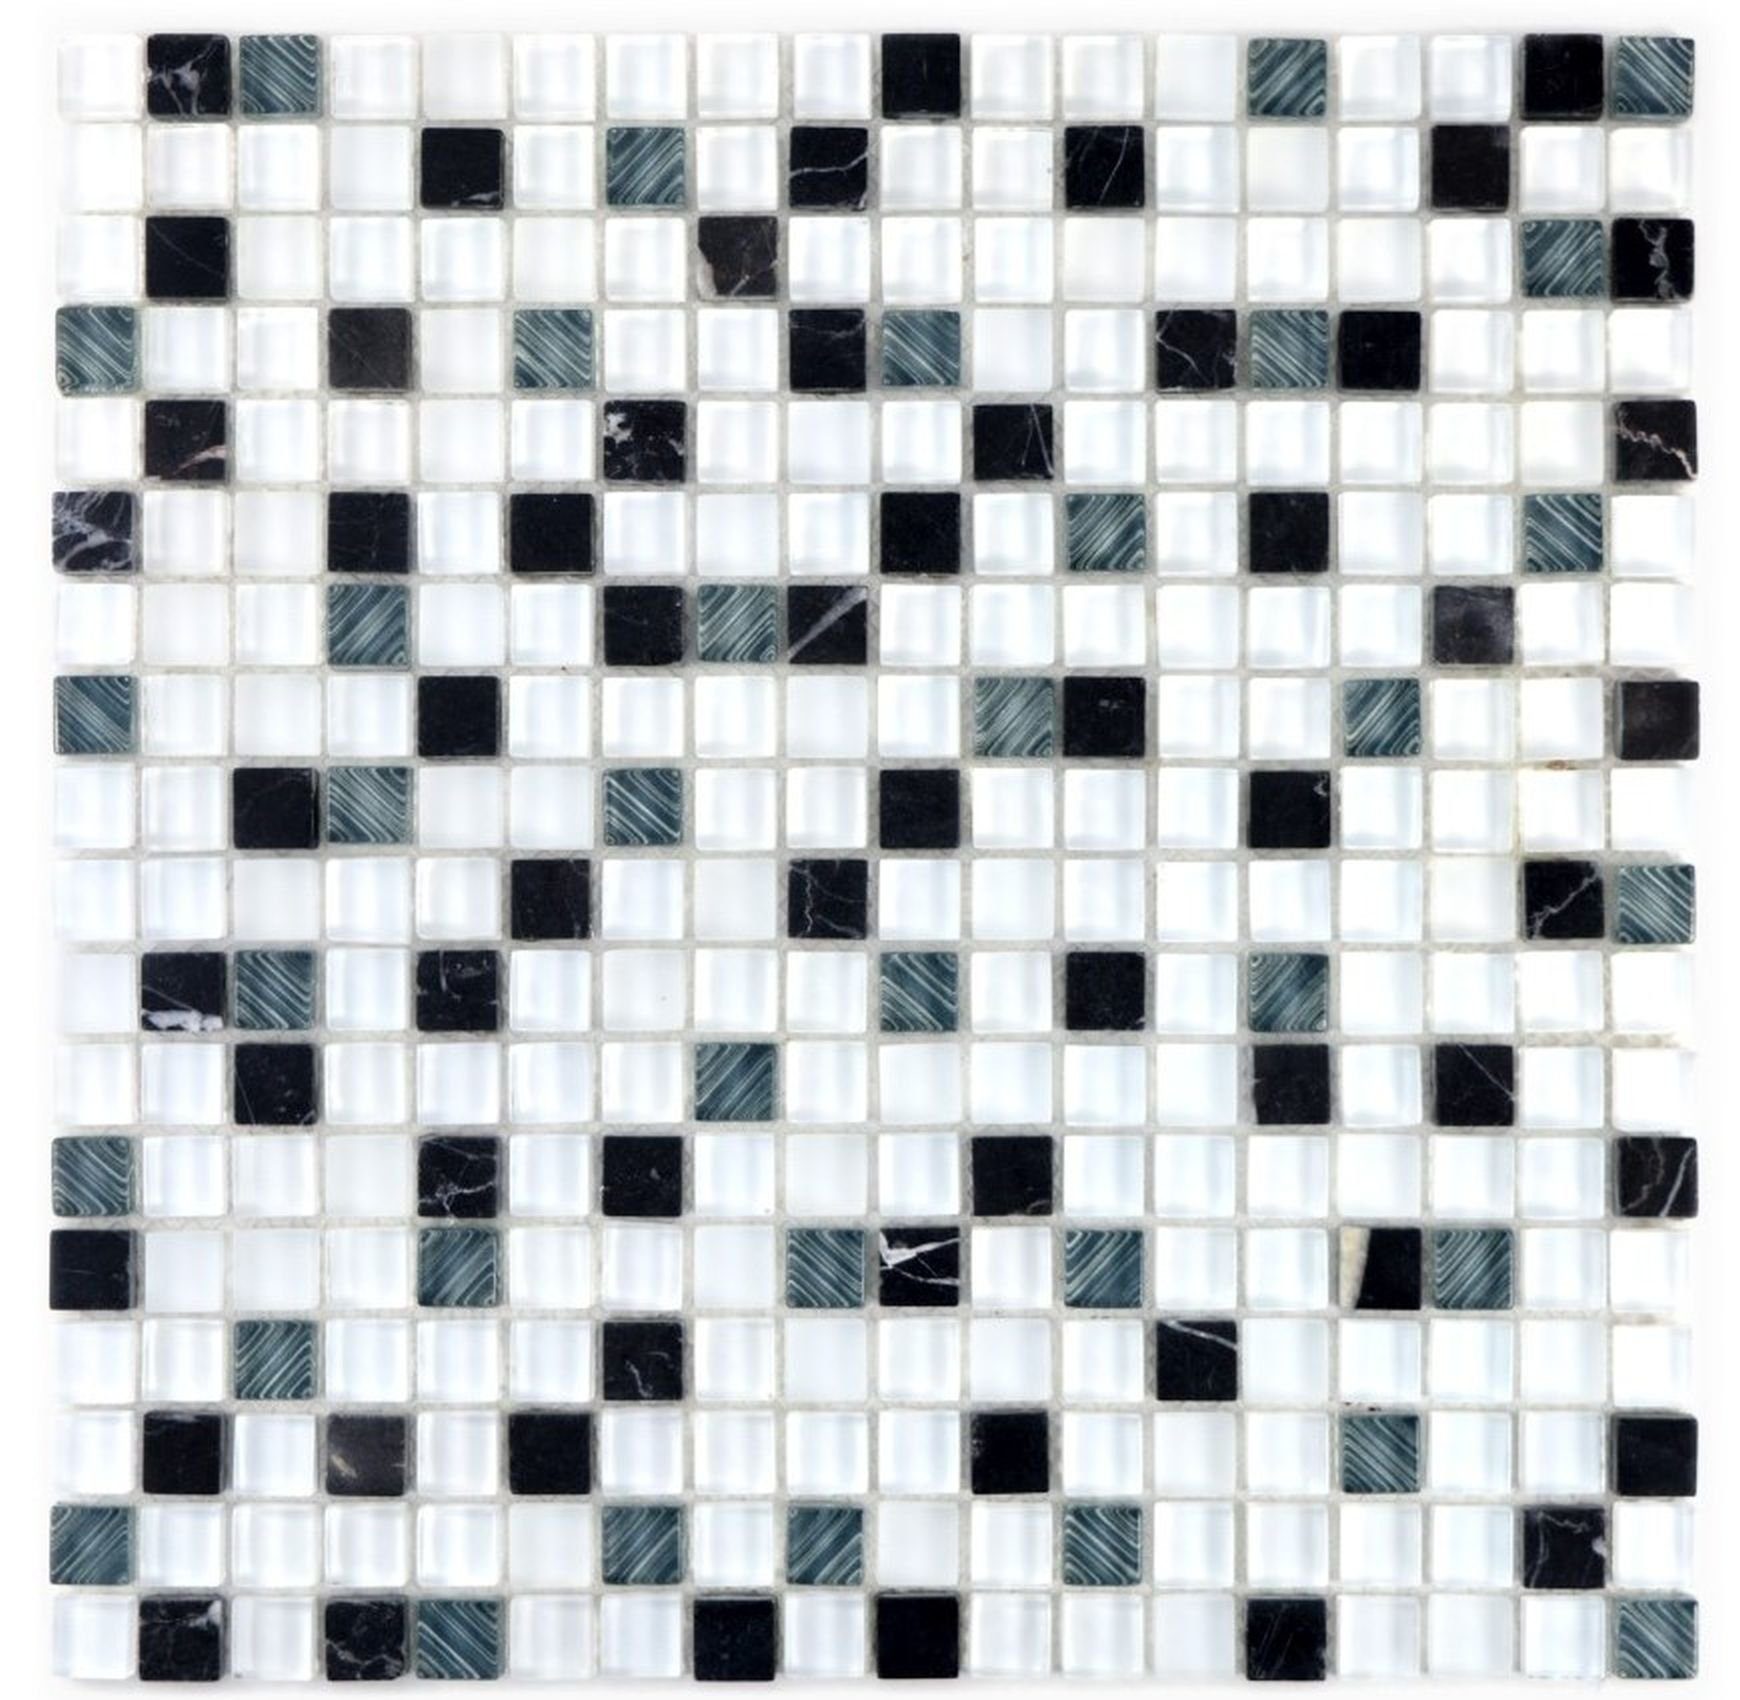 Mosani Mosaikfliesen Glasmosaik Naturstein Mosaikfliese weiß dunkelgrau schwarz